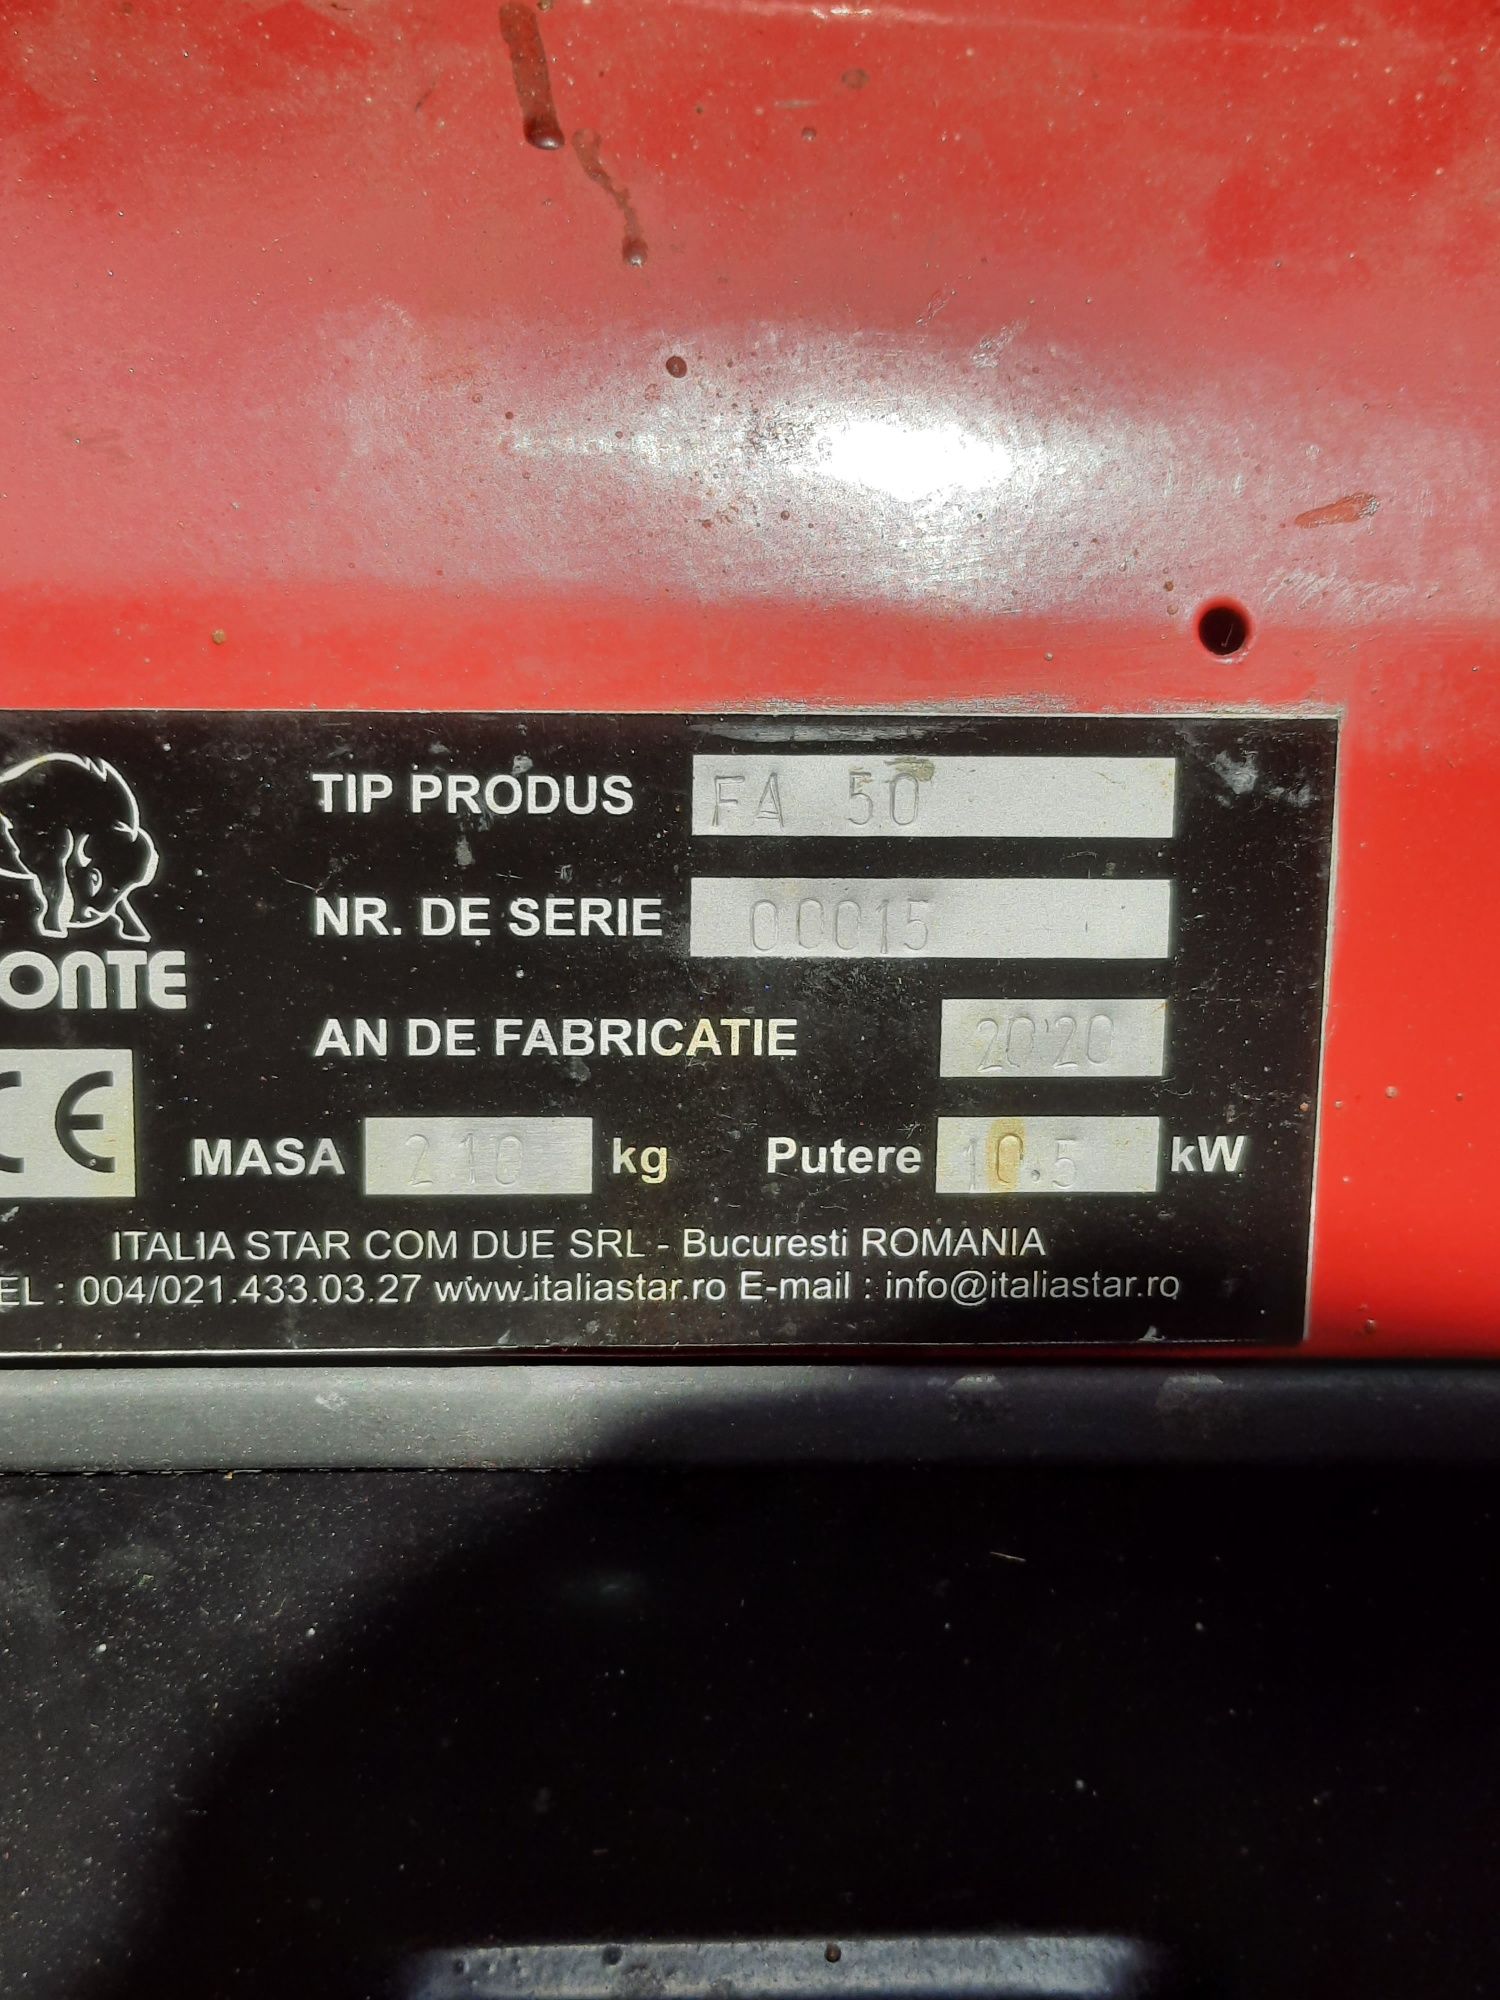 Pompa spuma poliuretanica Bisonte F50